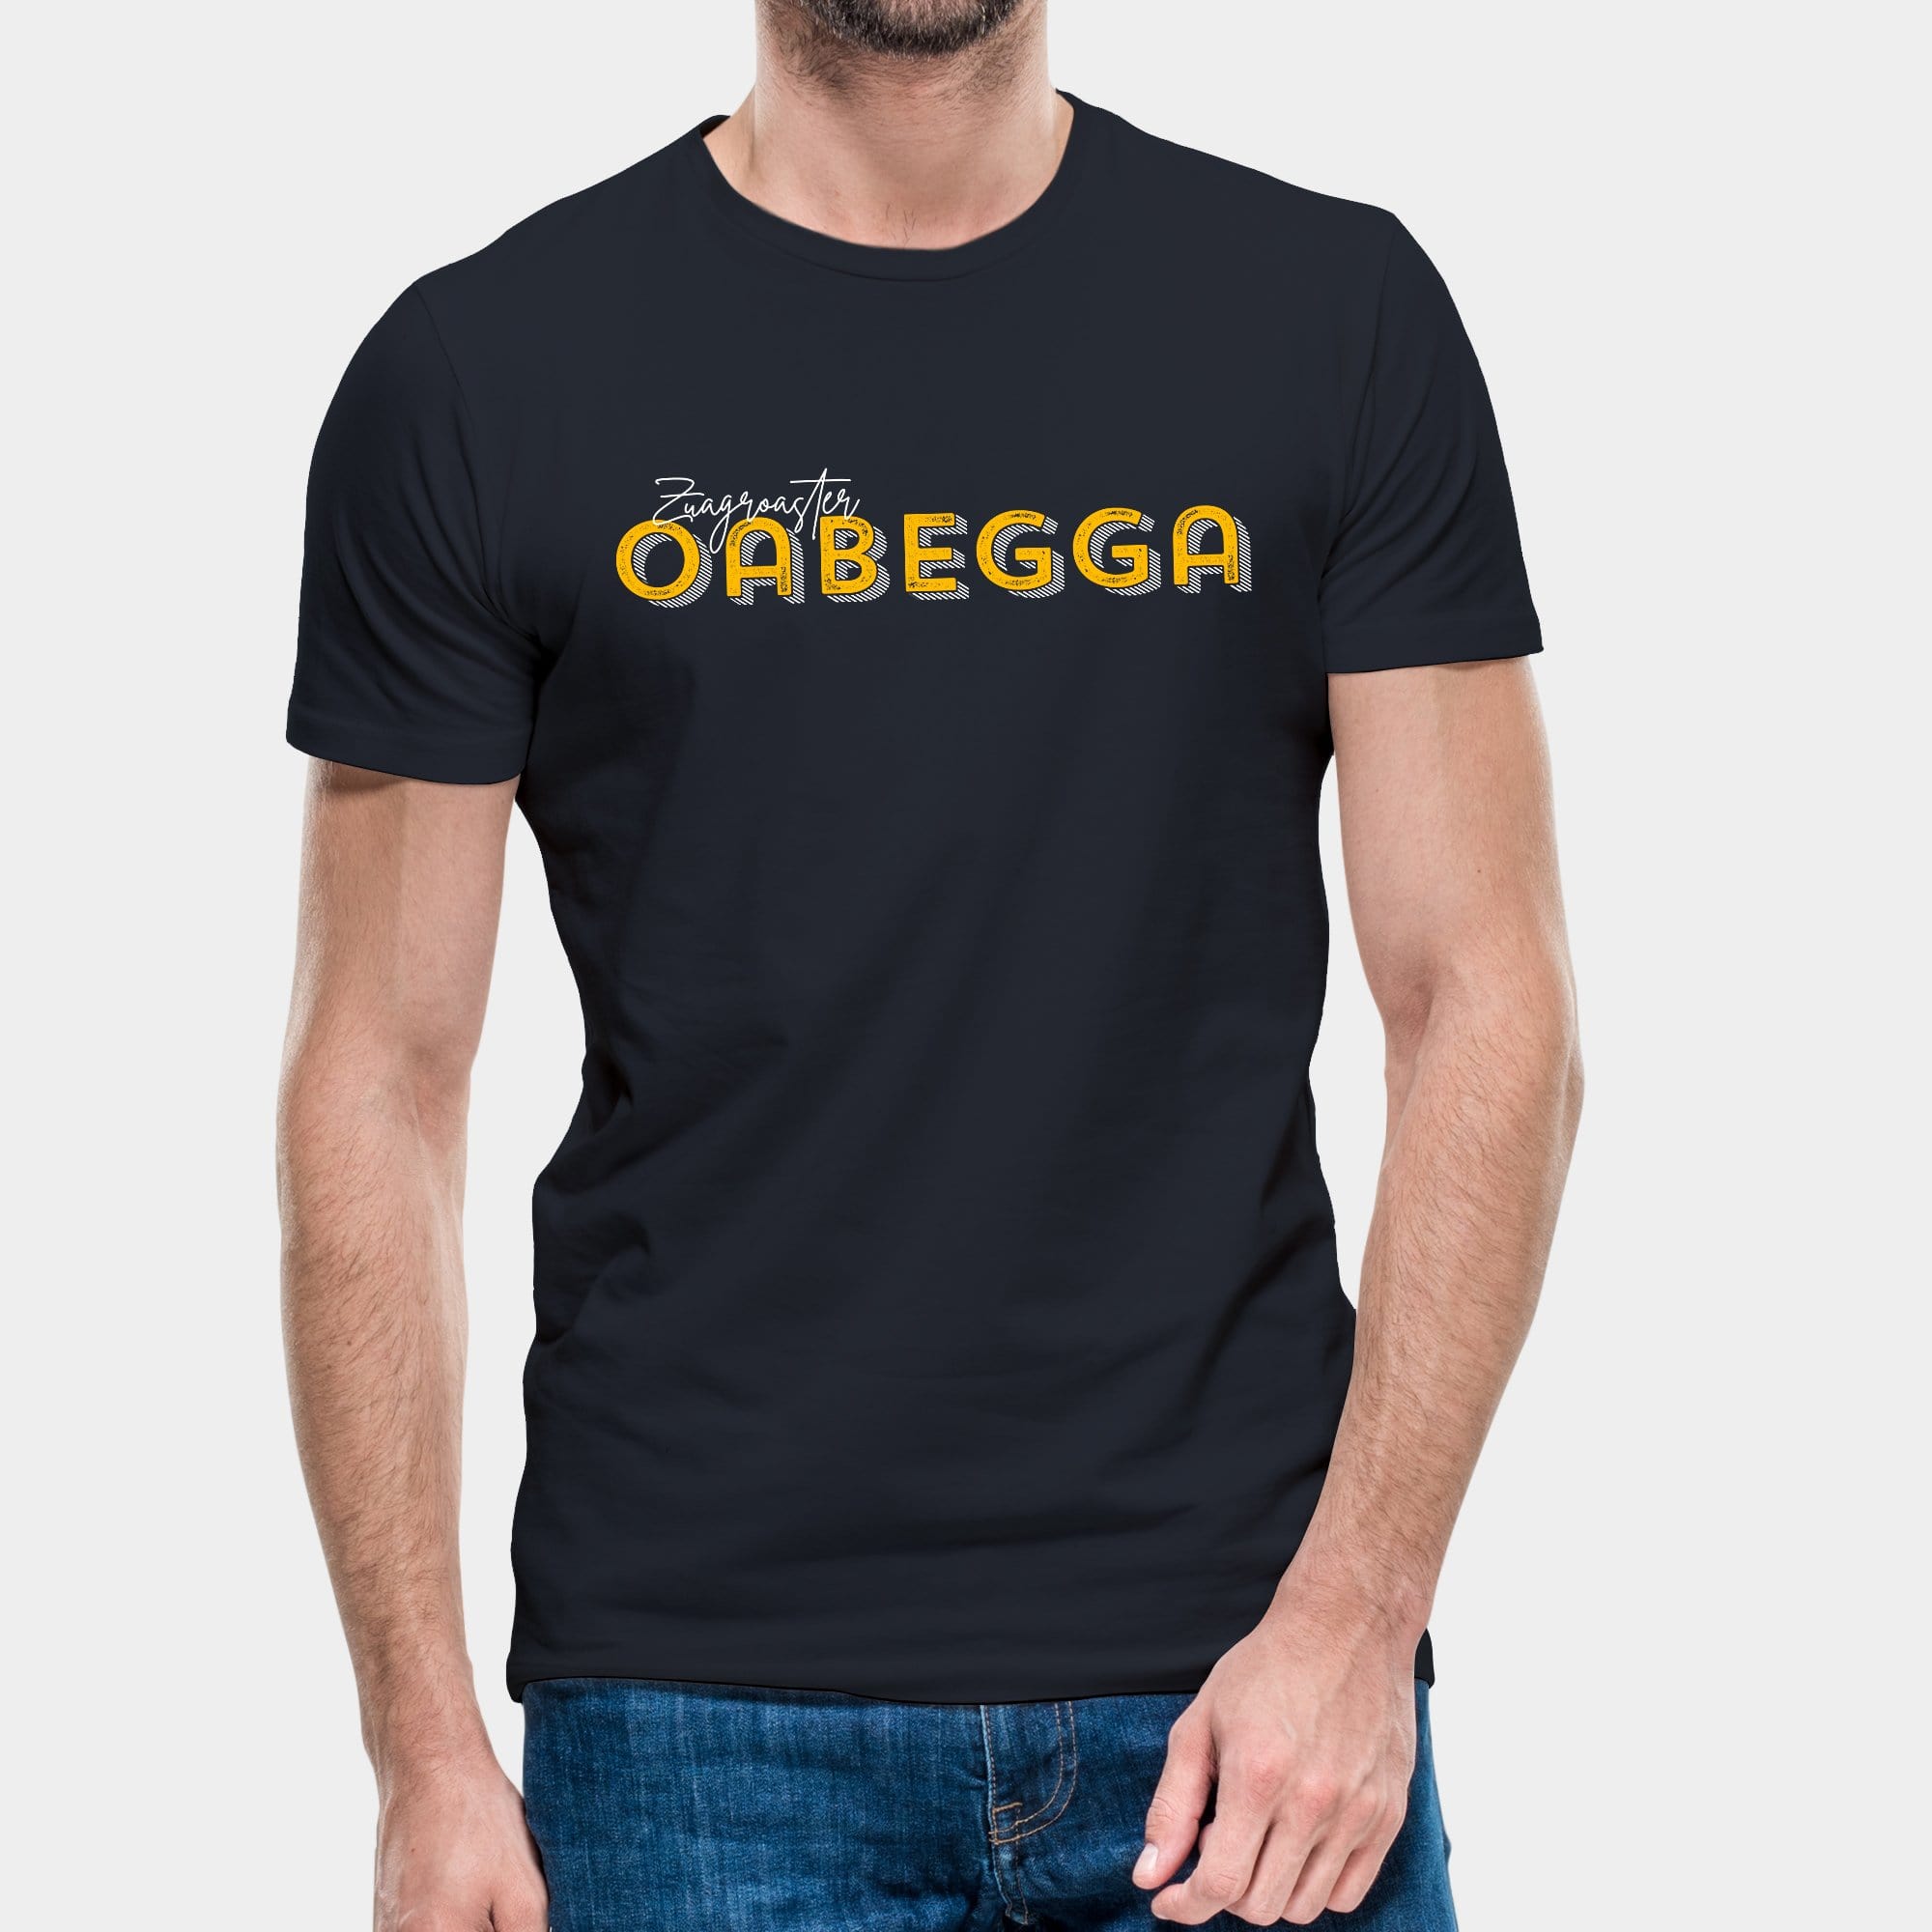 Projekt Herren-T-Shirt "Zuagroaster Oabegga" S / navyblau - aus nachhaltiger und fairer Produktion